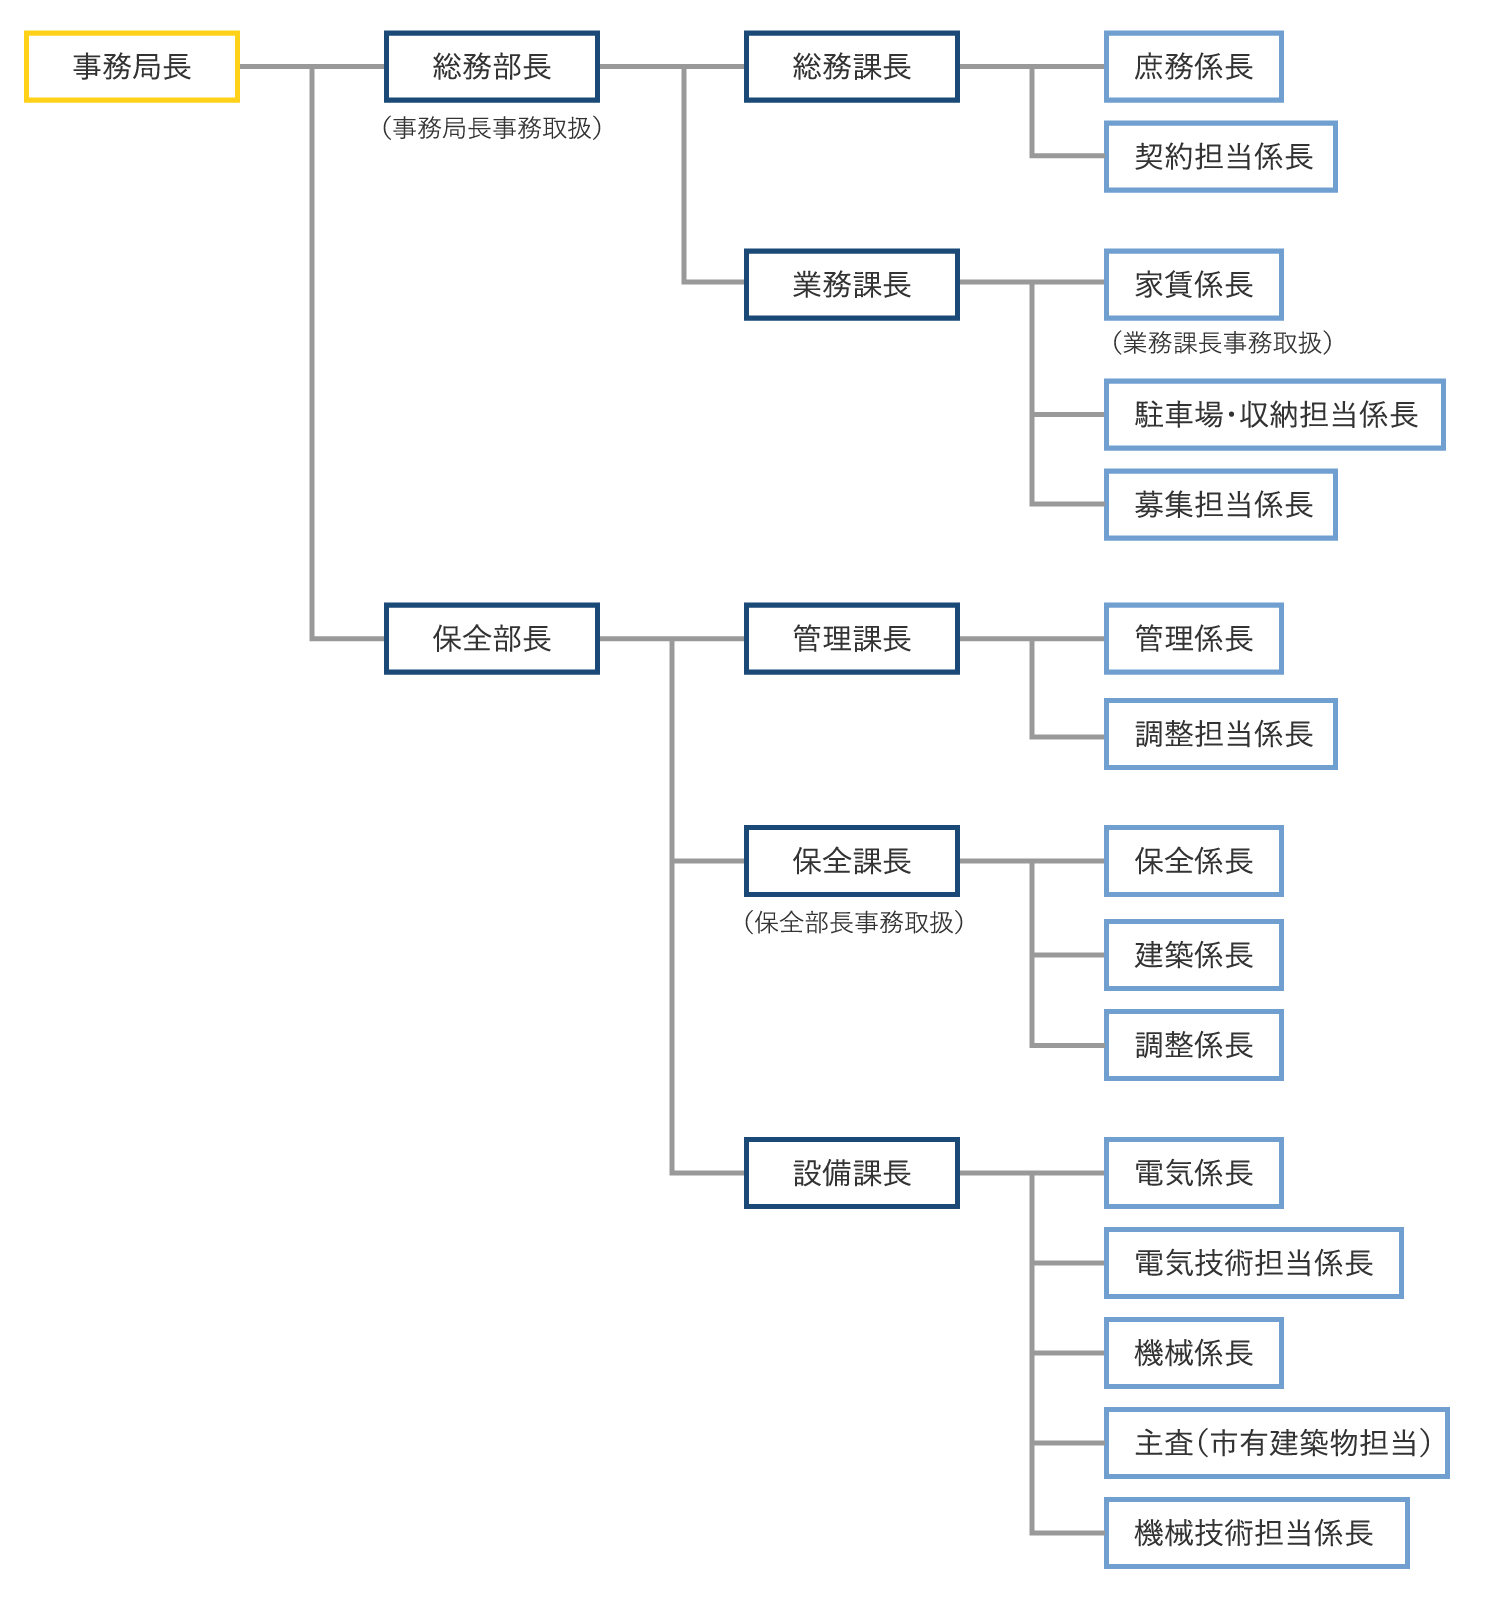 札幌市住宅管理公社組織図 詳細はクリックしてください